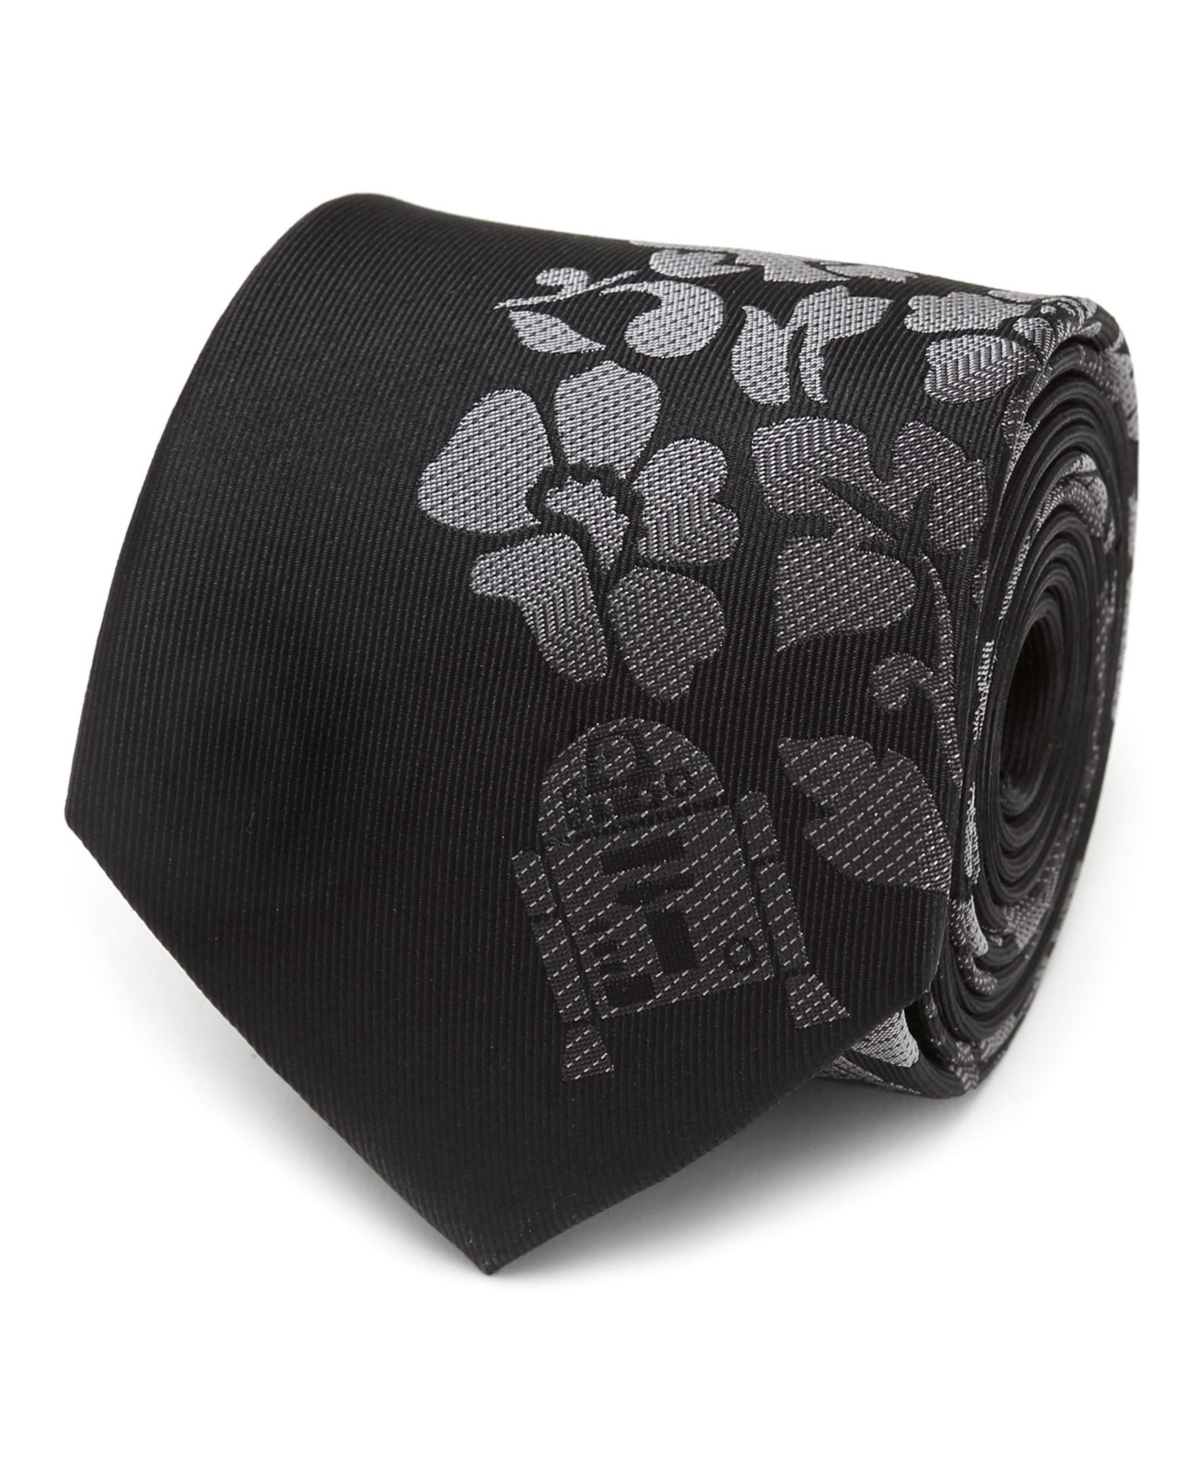 R2D2 Floral Men's Tie - Black